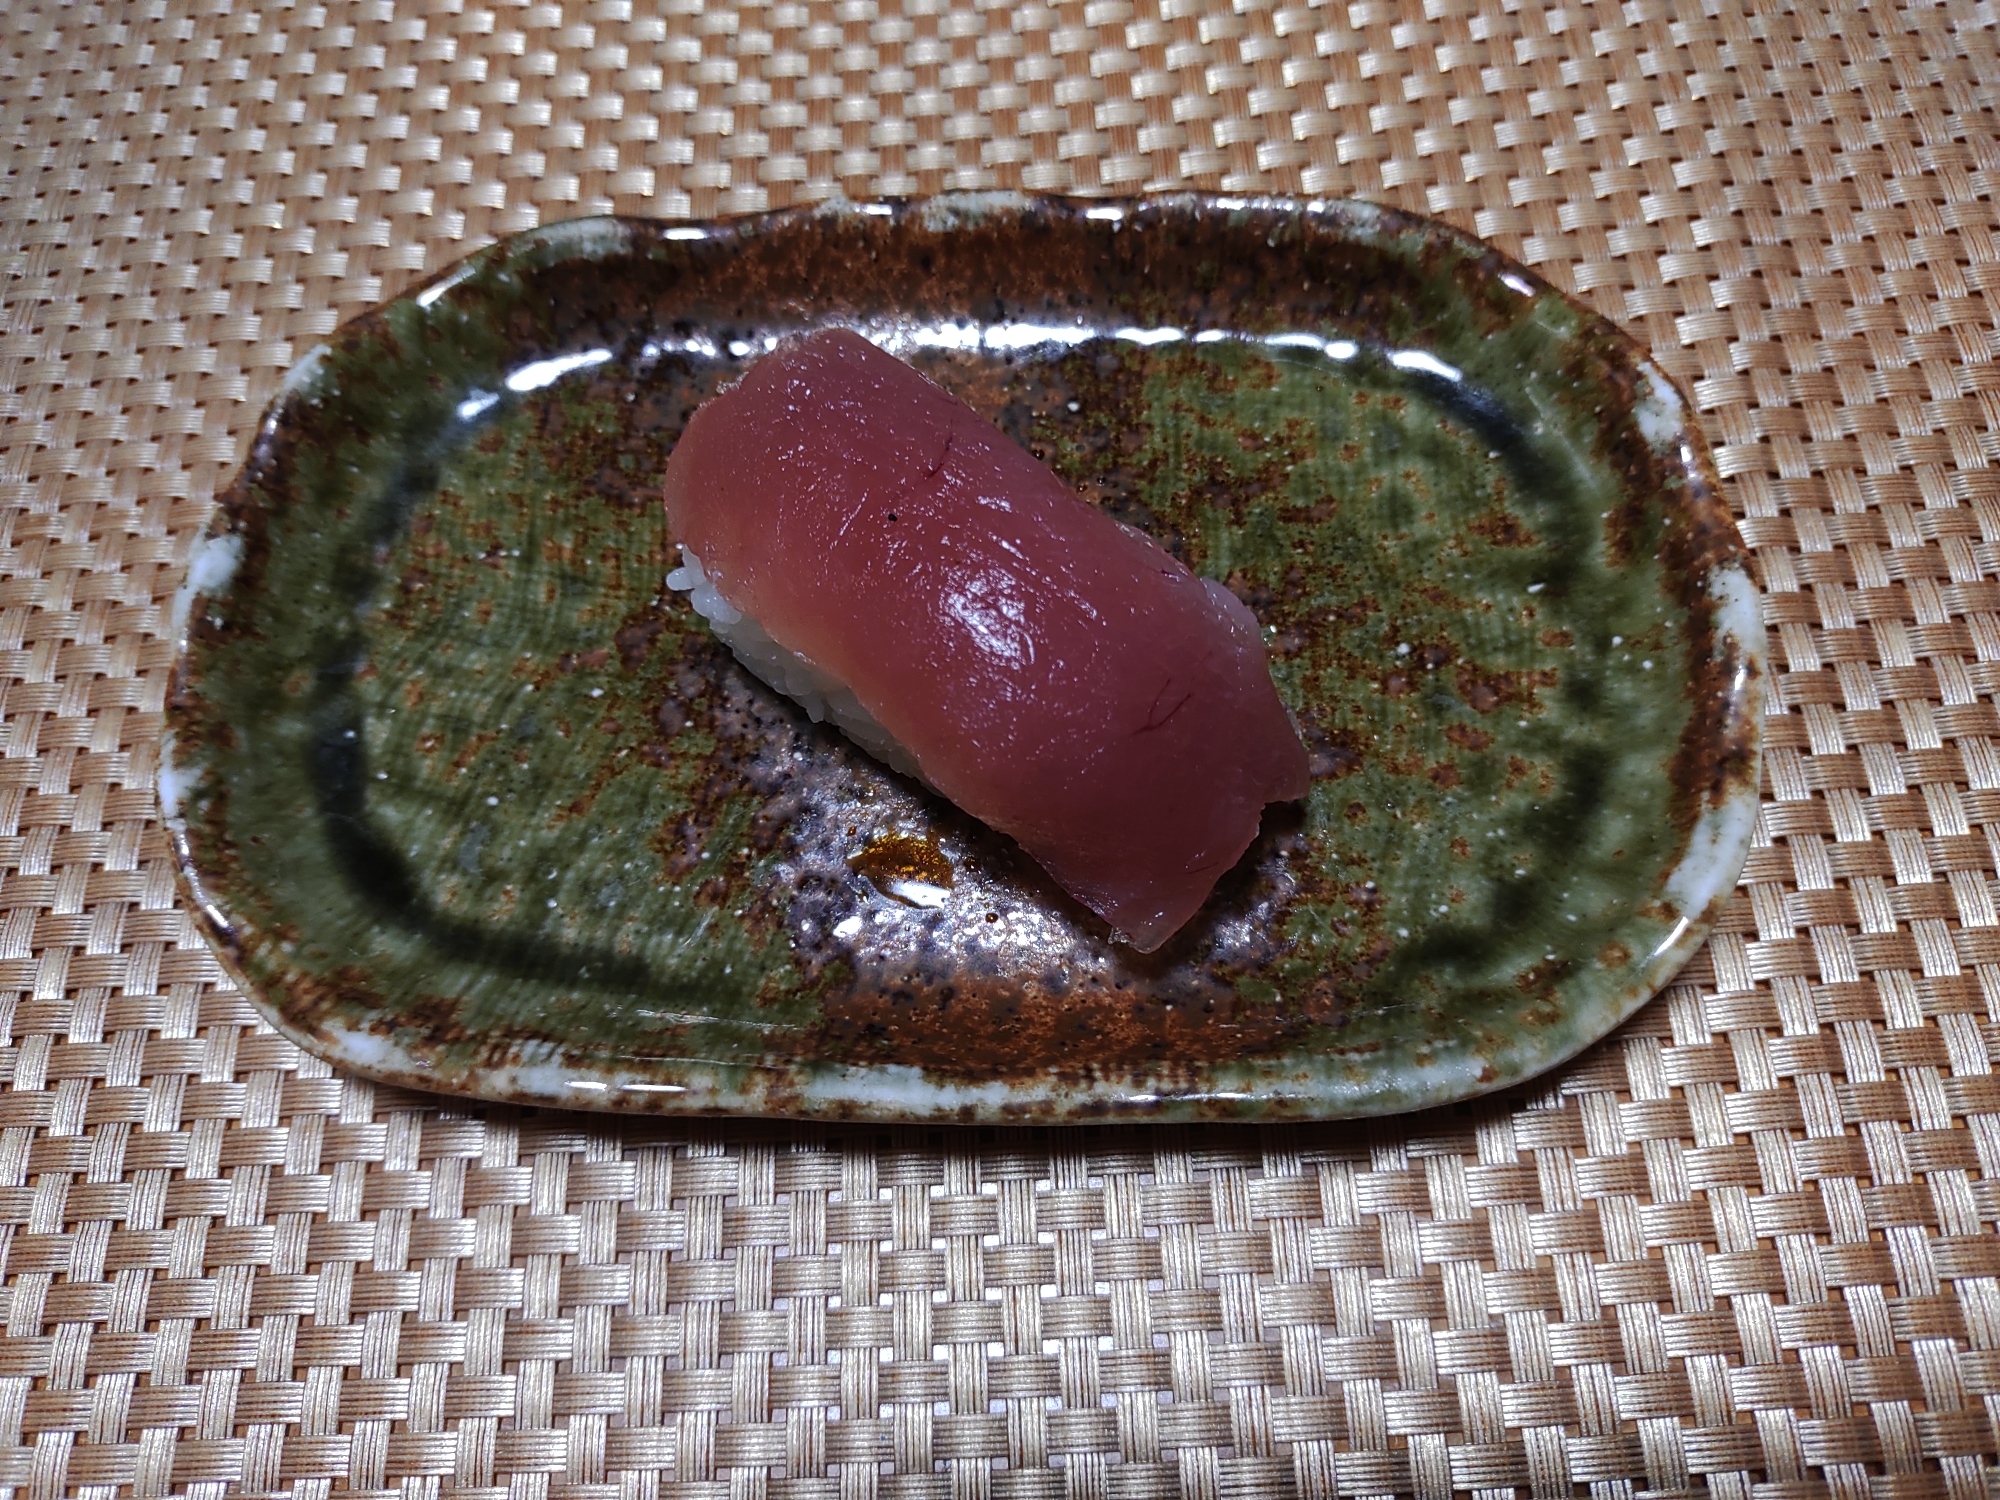 マグロの握り寿司